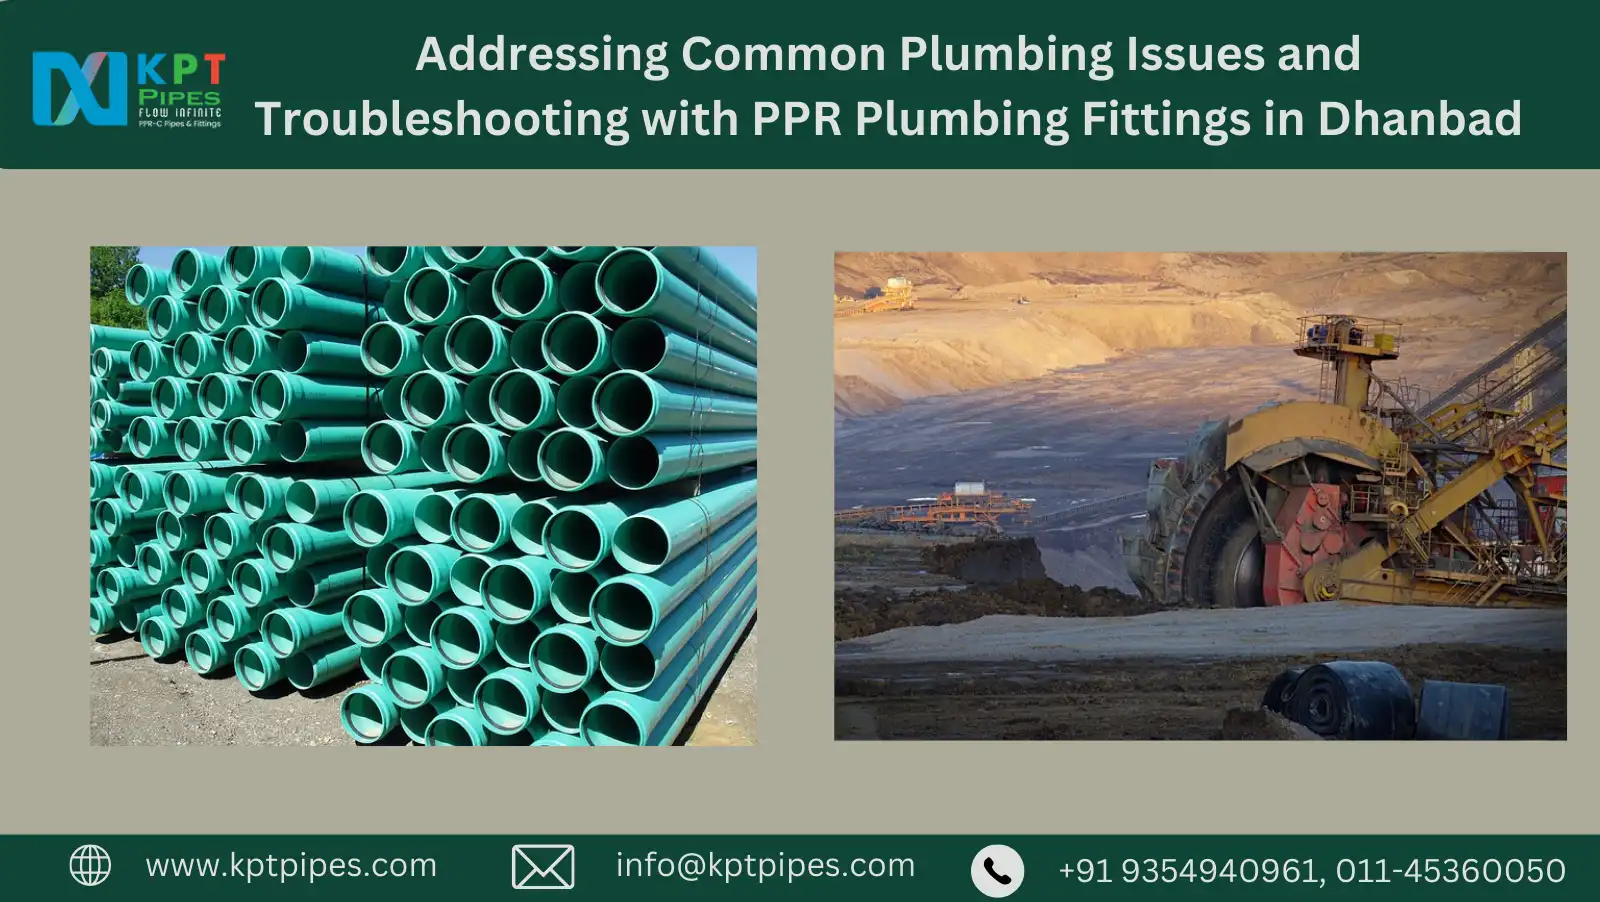 PPR Plumbing Fittings in Dhanbad